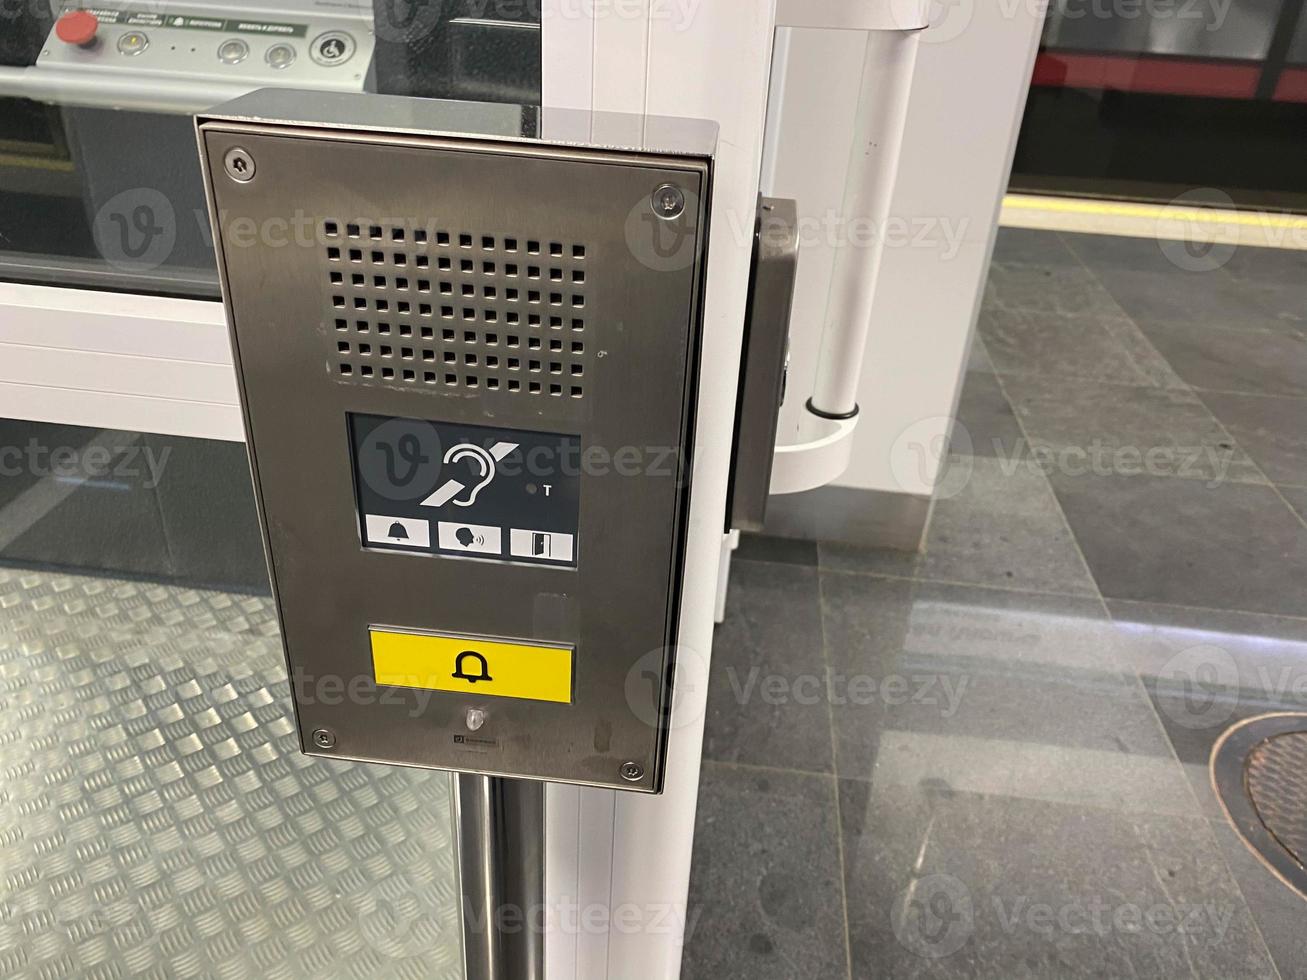 groot telefoontje knop voor een inclusief lift in de metro of boodschappen doen centrum voor mensen met handicaps en mensen met handicaps voor een barrièrevrij milieu in de stad foto